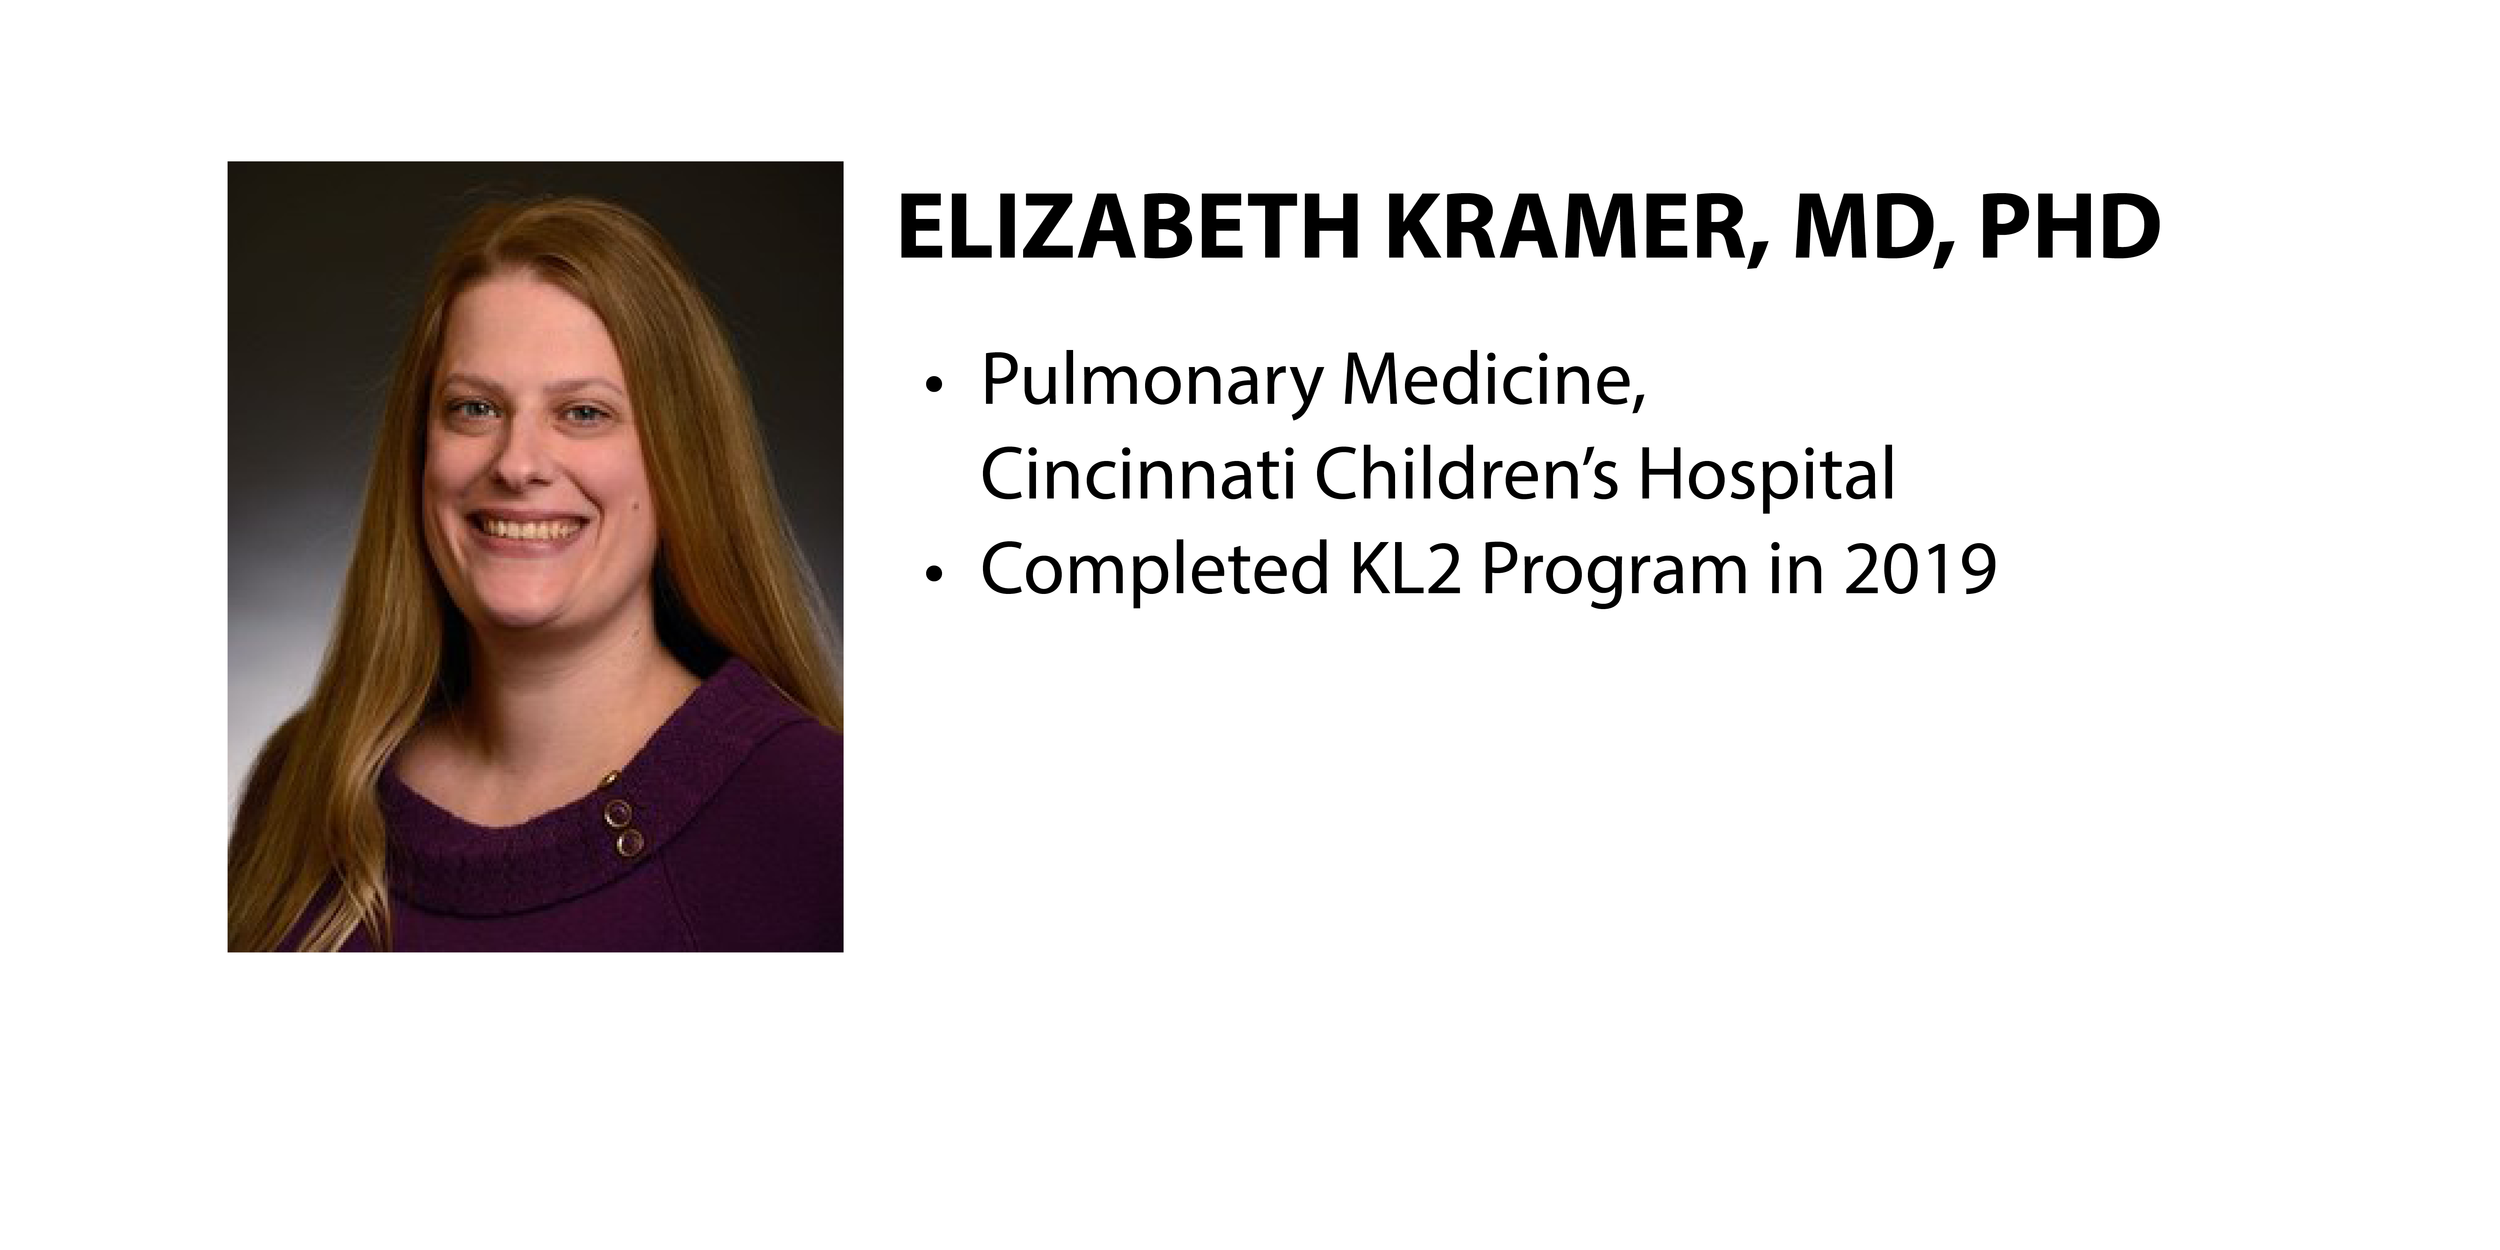 K Scholar Overview: Elizabeth Kramer